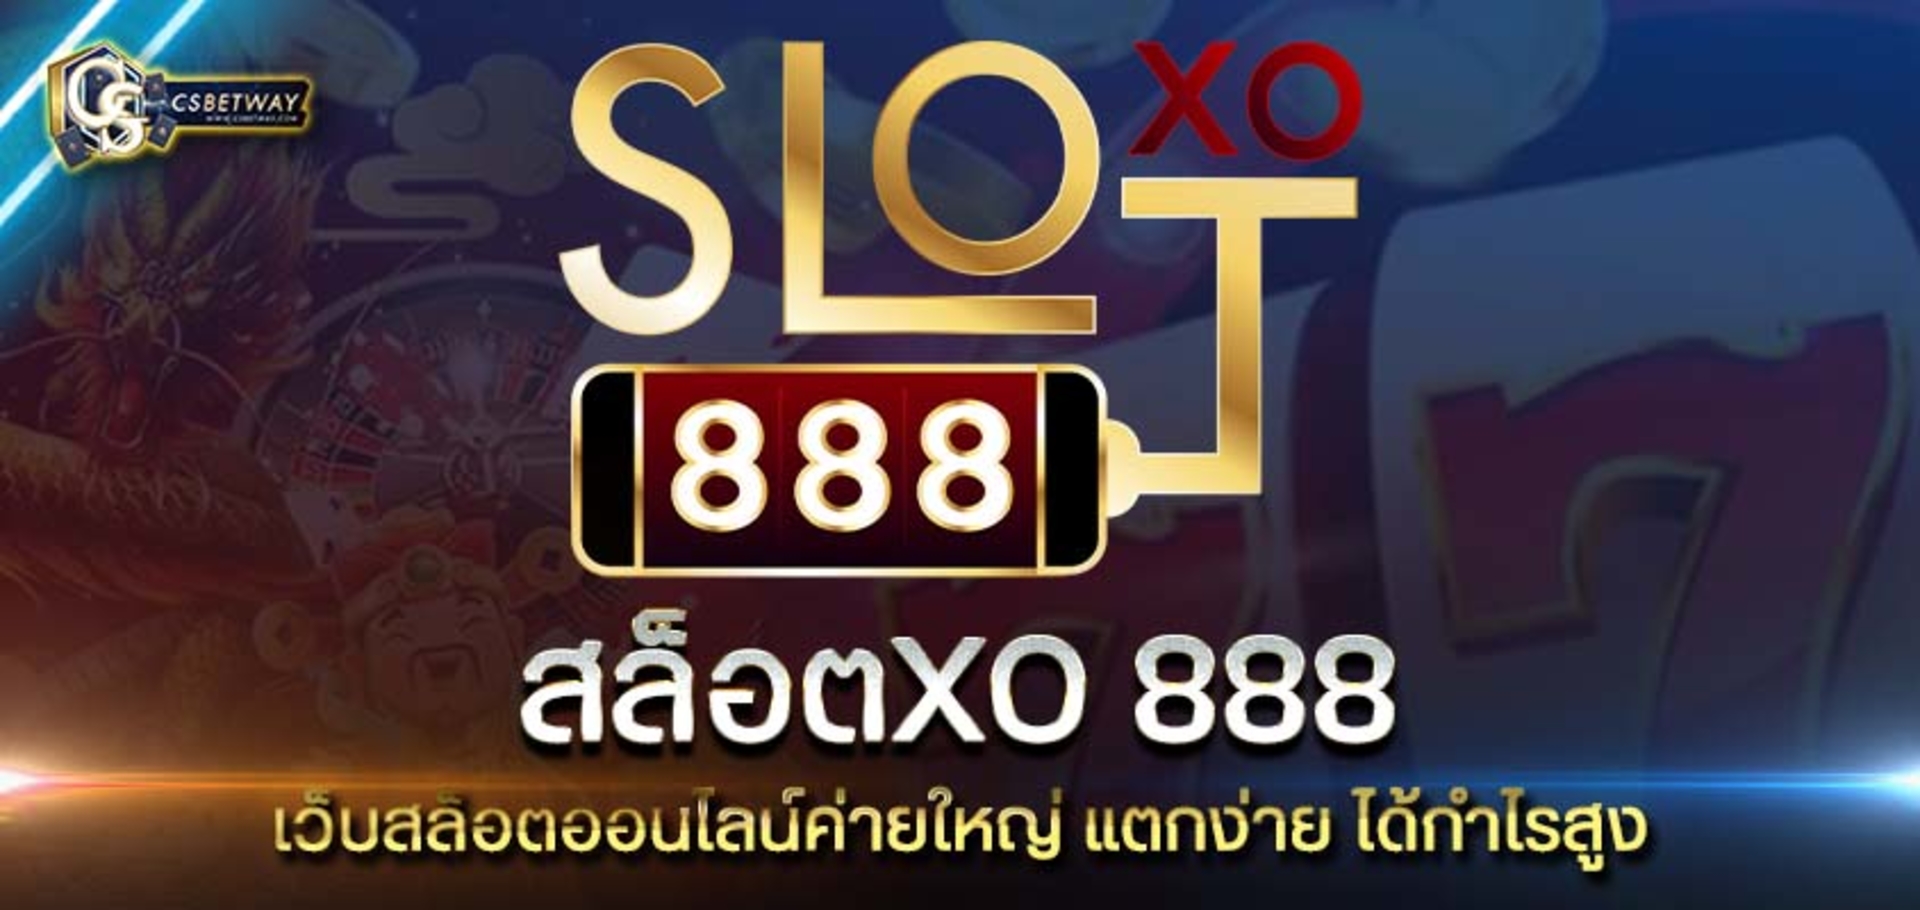 สล็อตXO 888 เว็บสล็อตออนไลน์ค่ายใหญ่ SlotXO 888 แตกง่าย ได้กำไรสูง